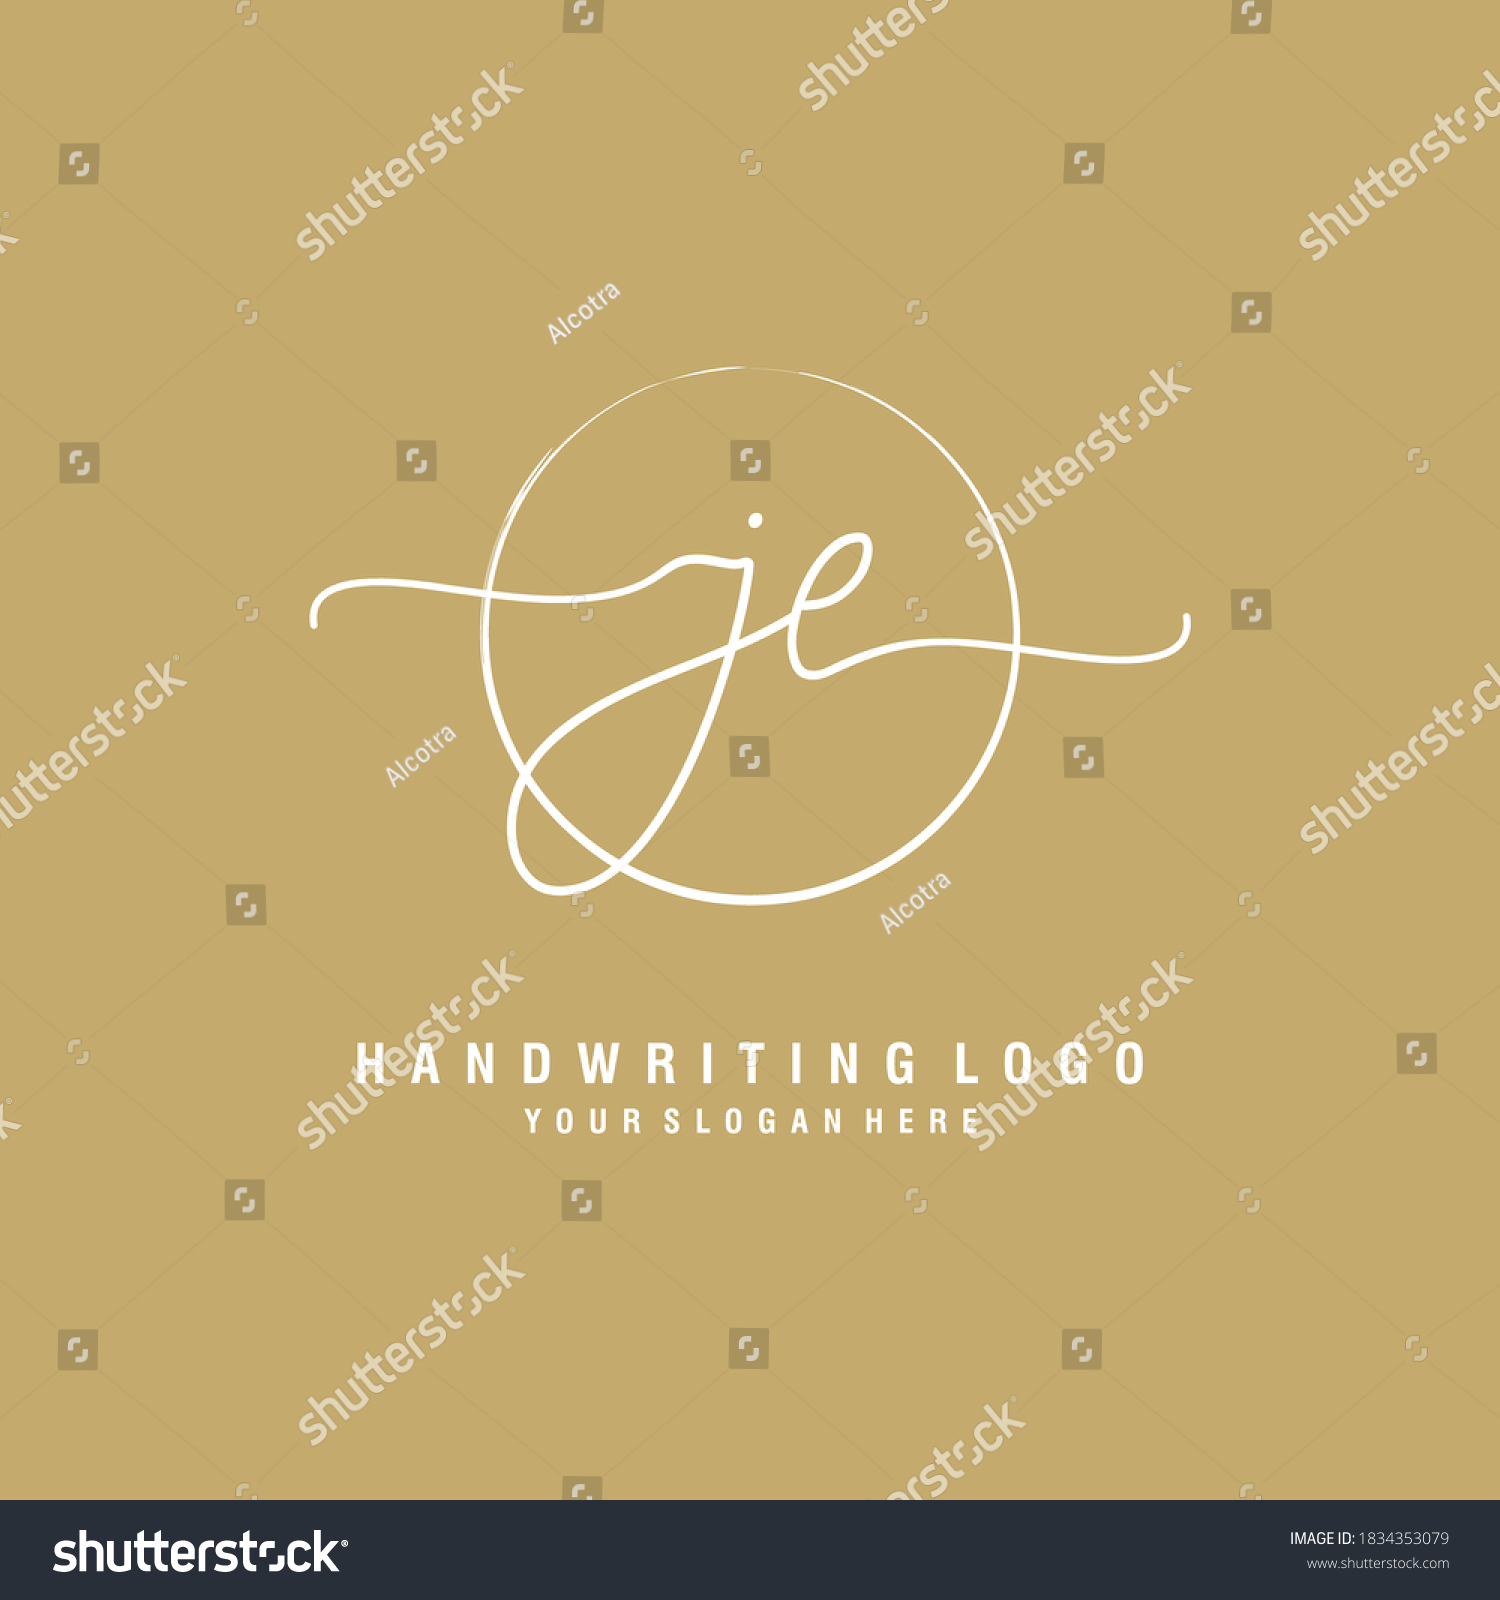 JE Initial handwriting logo template vector #1834353079